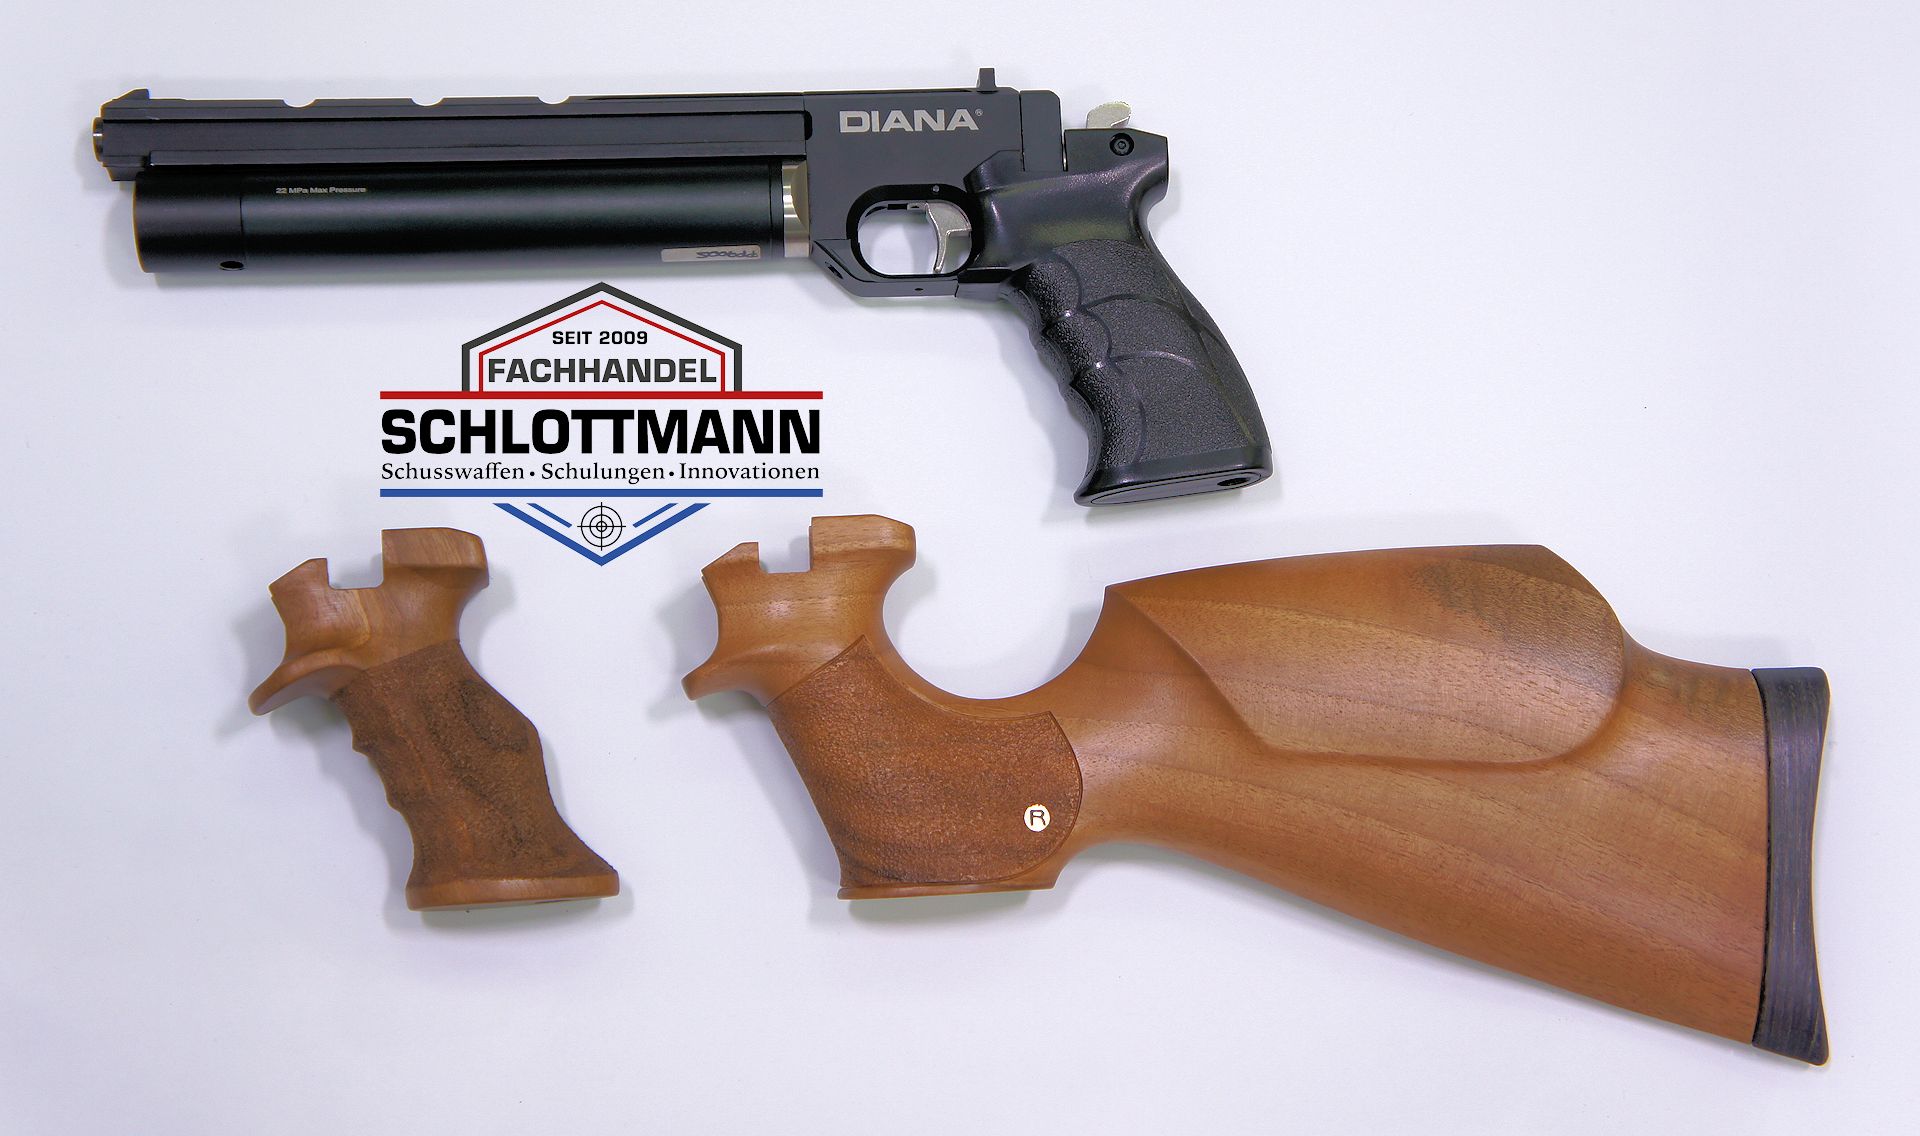 Die Luftpistole Artemis PP700S kommt unter dem Namen Diana auf den deutschen Markt. Hölzerne Griffe und Anschlagschäfte lasse ich für Sie anfertigen.